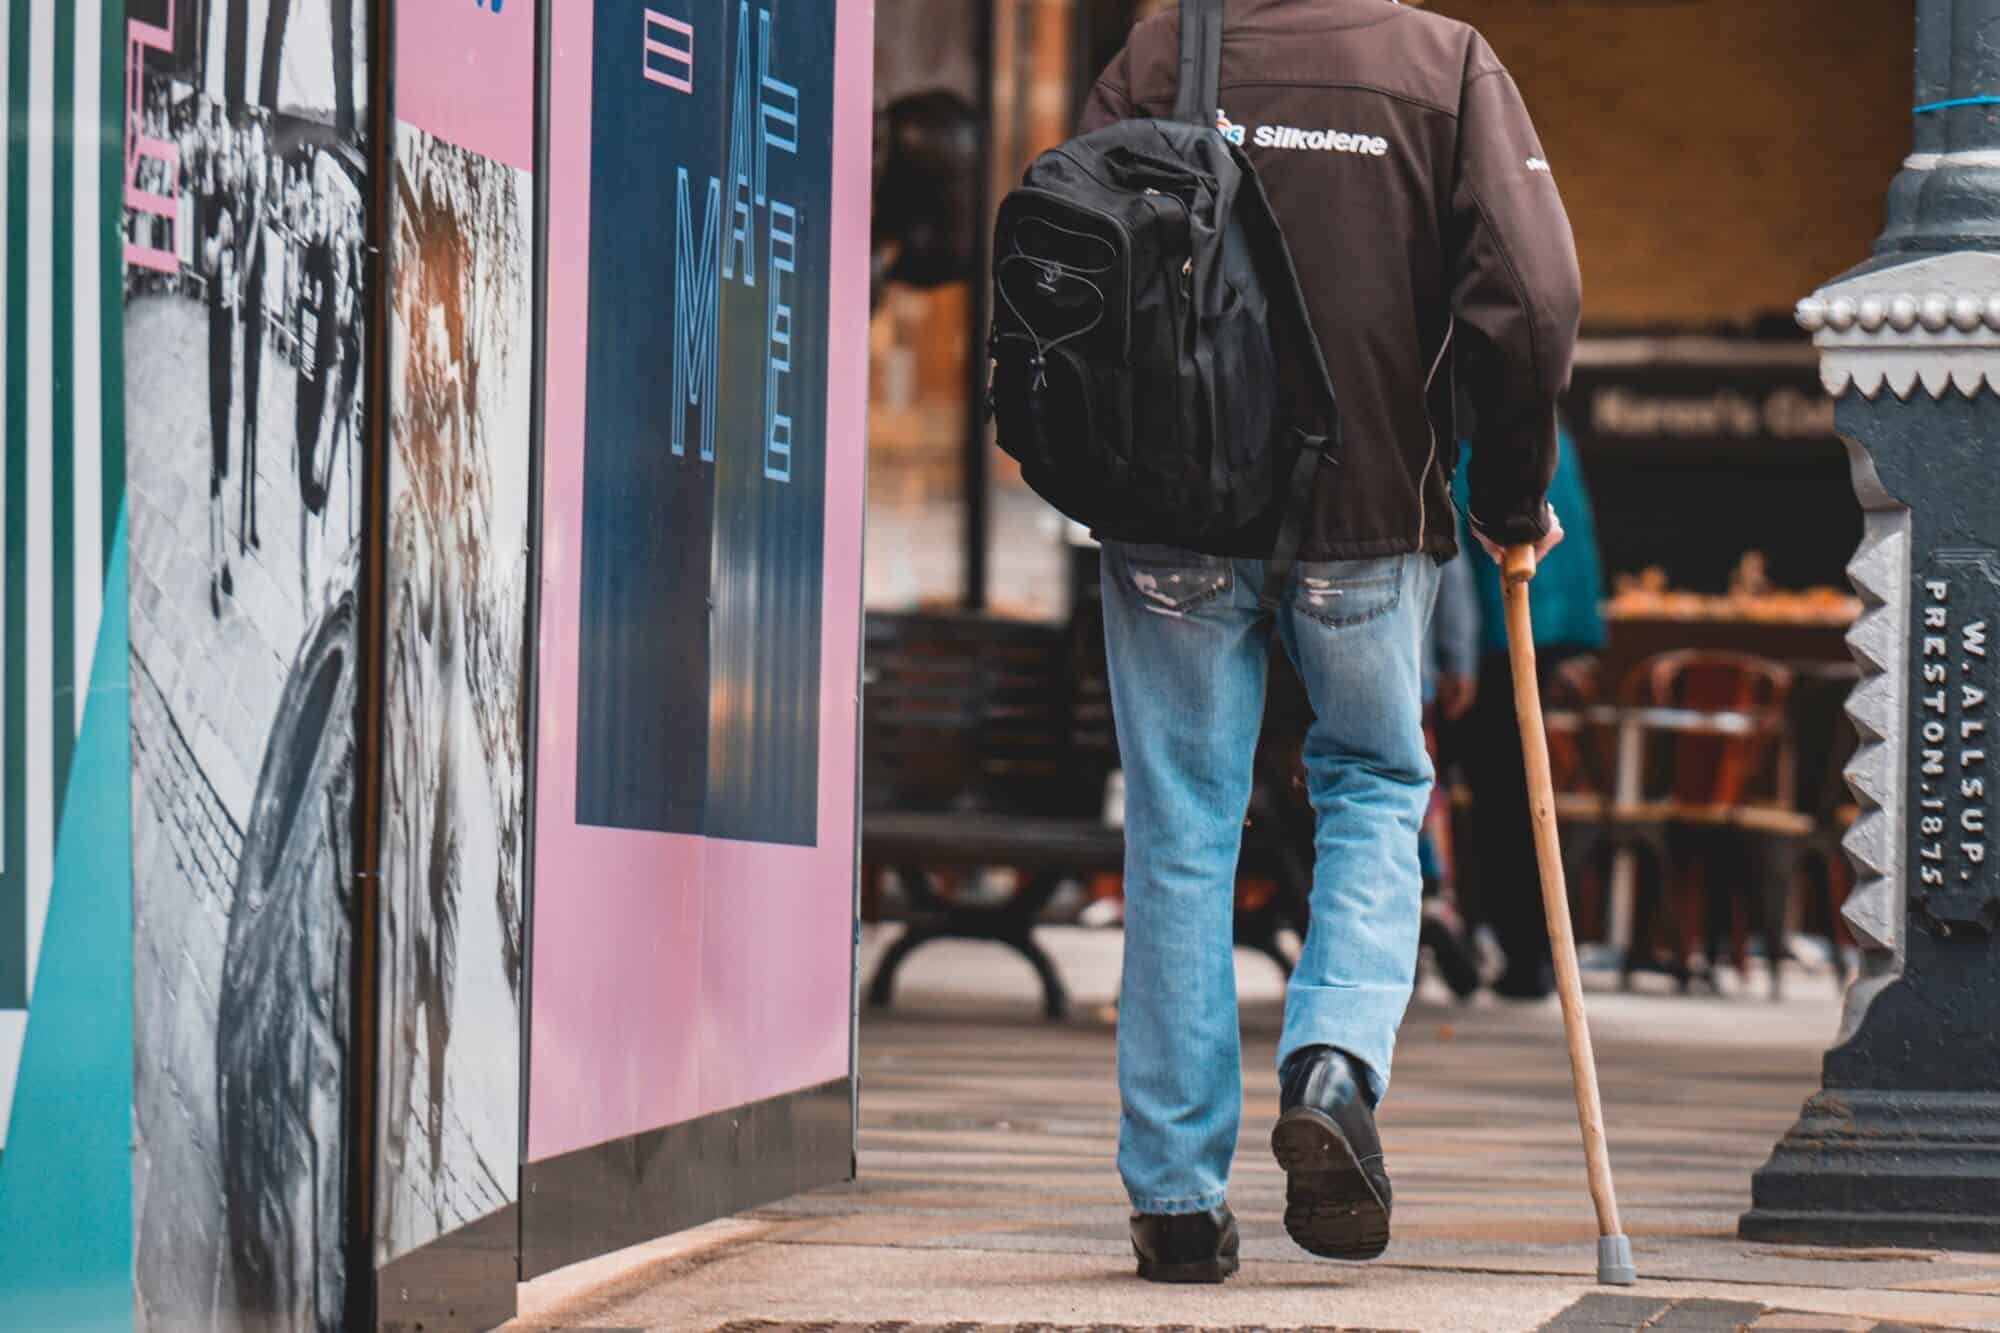 Man with a cane walking down a sidewalk.